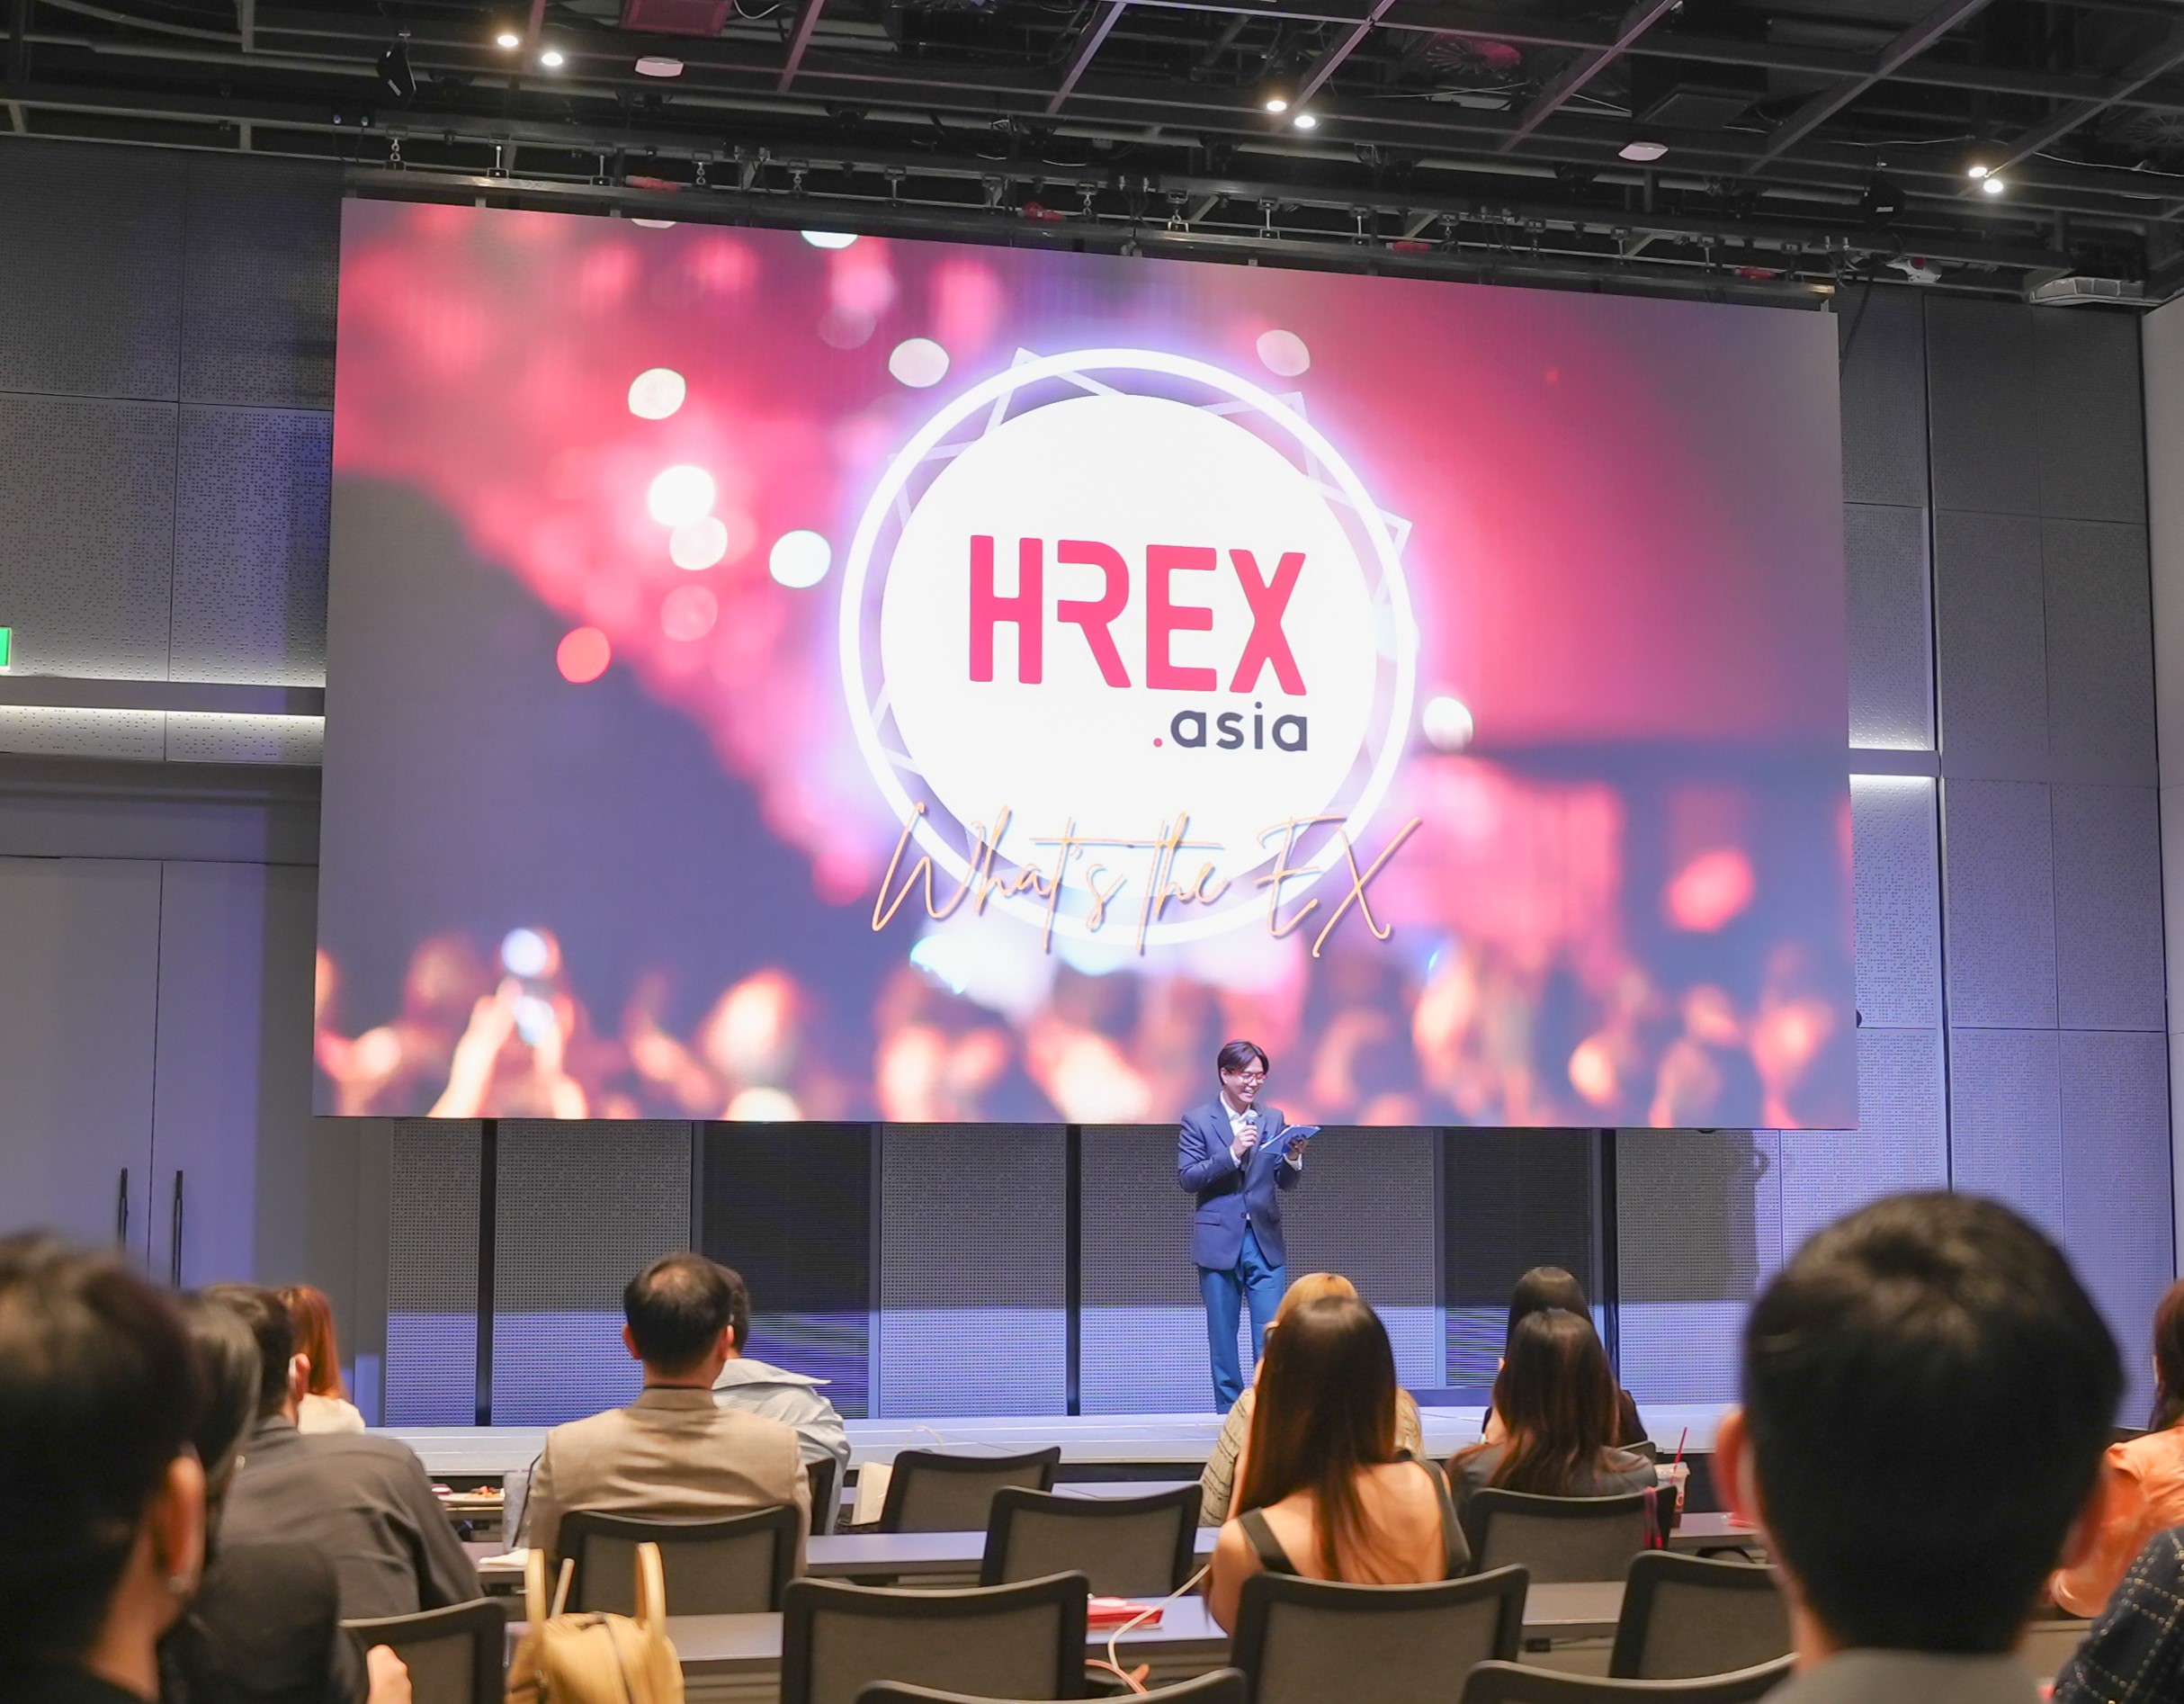 HREX.asia จัดงาน “What’s the EX?” ชูวิสัยทัศน์ยกระดับแวดวง HR รอบด้าน สร้างสังคมการทำงานที่ยั่งยืนครบวงจร 